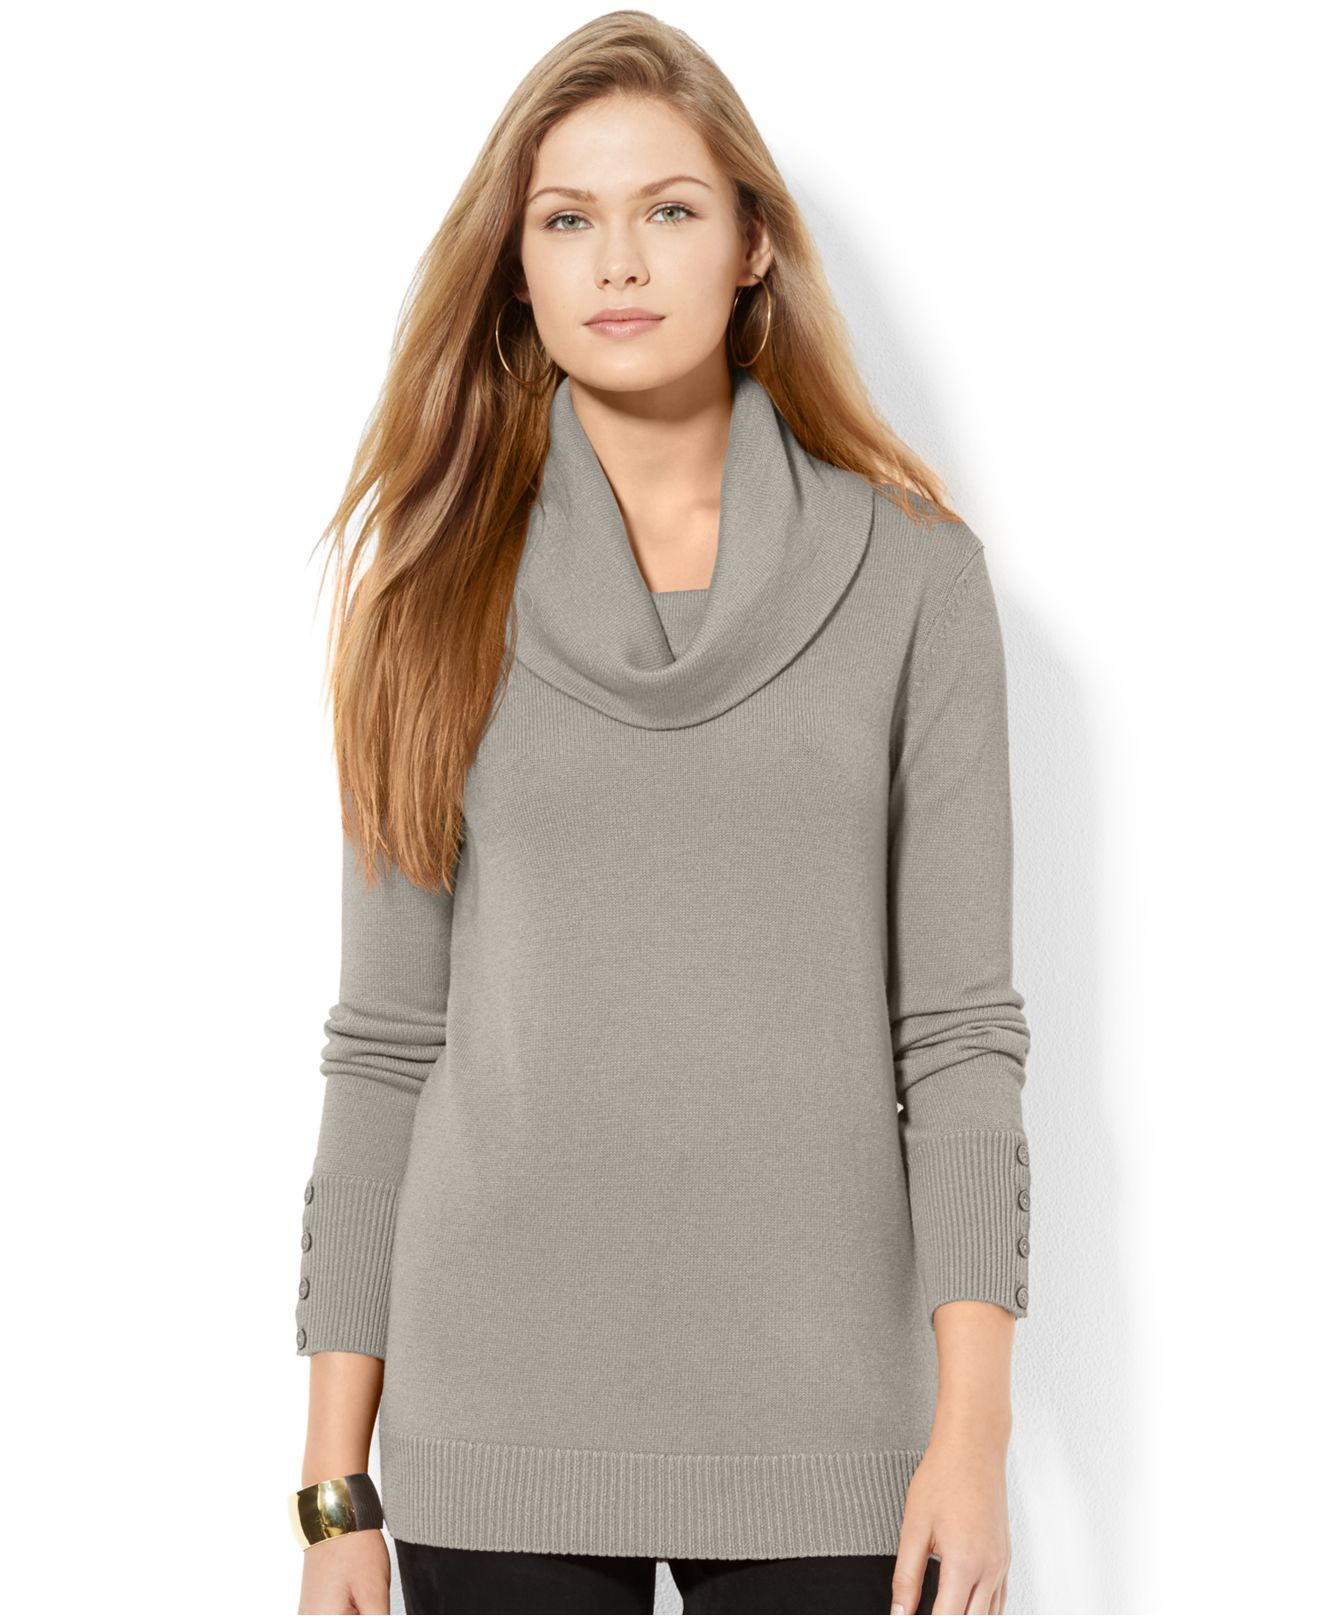 Lyst - Lauren By Ralph Lauren Cowl-Neck Button-Cuff Sweater in Gray